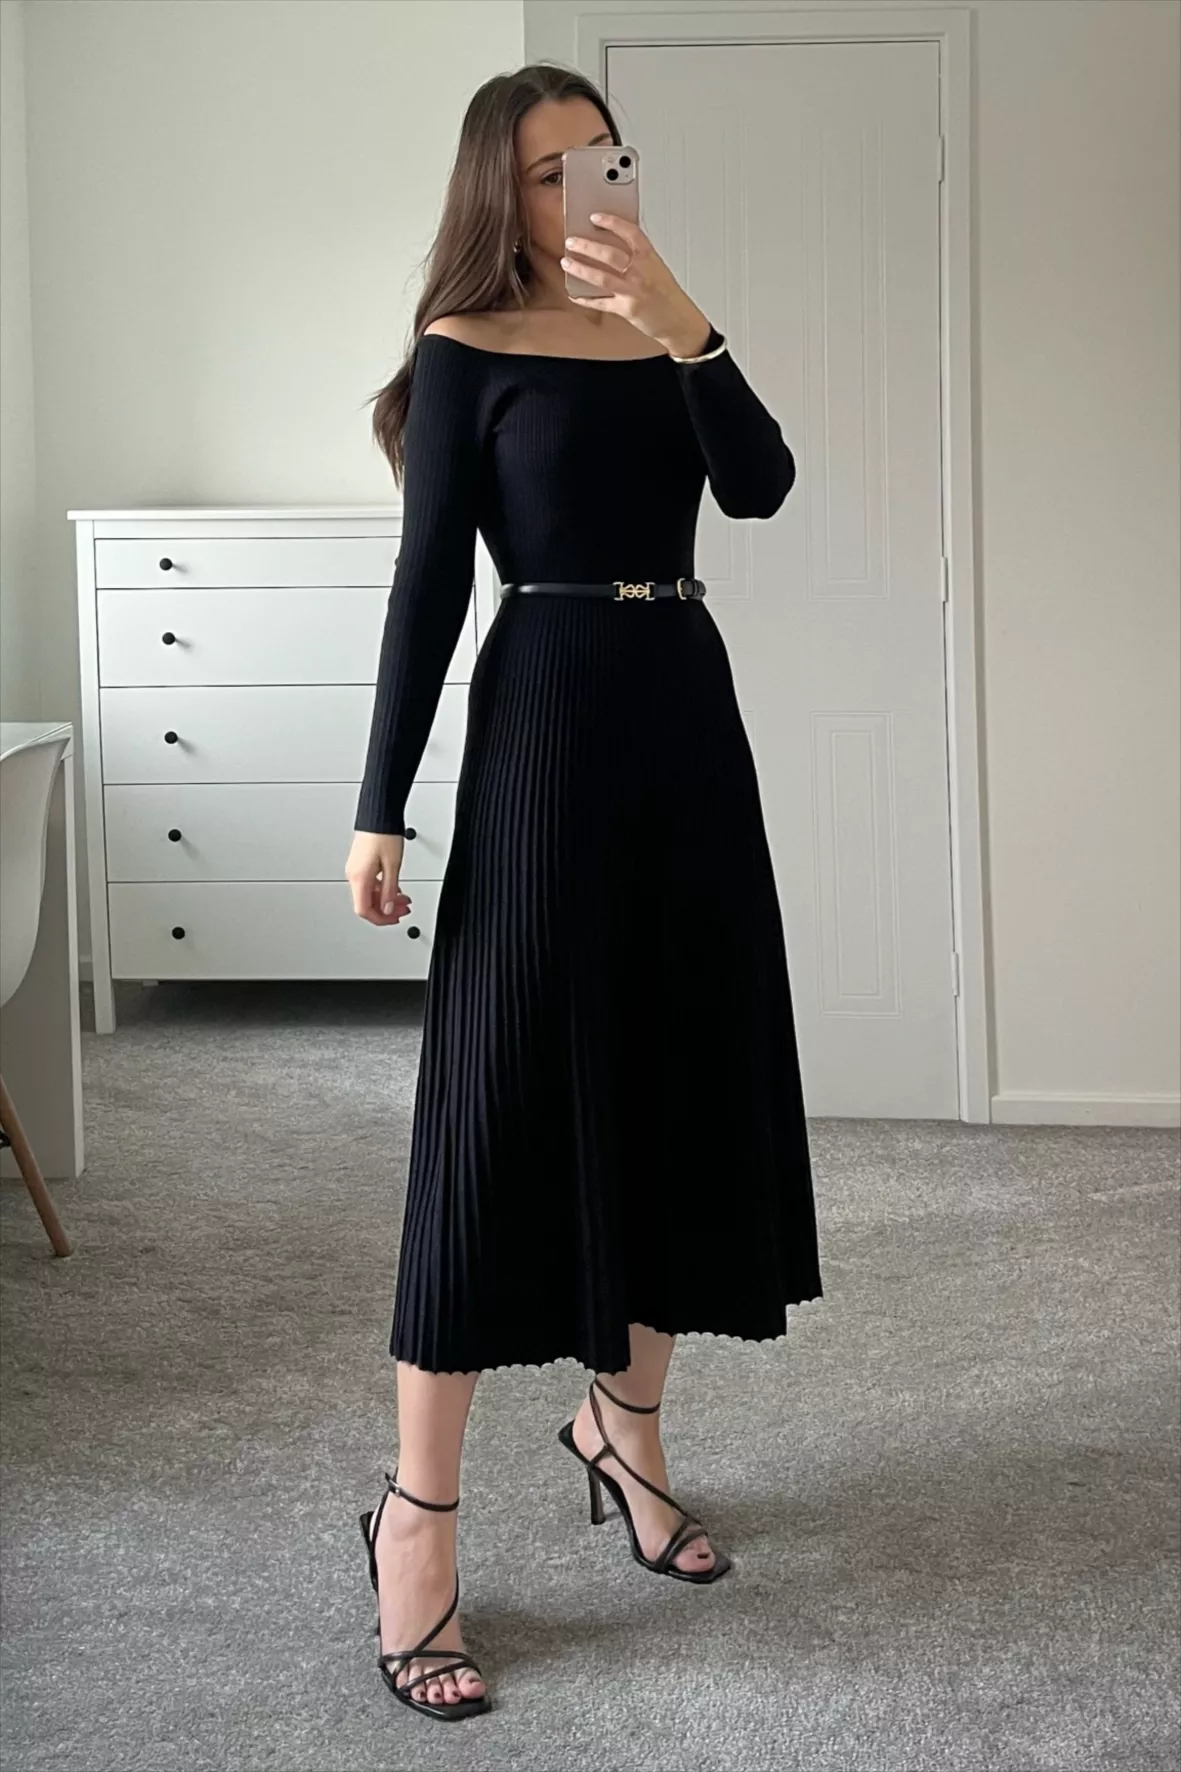 Mona | Knit Dress